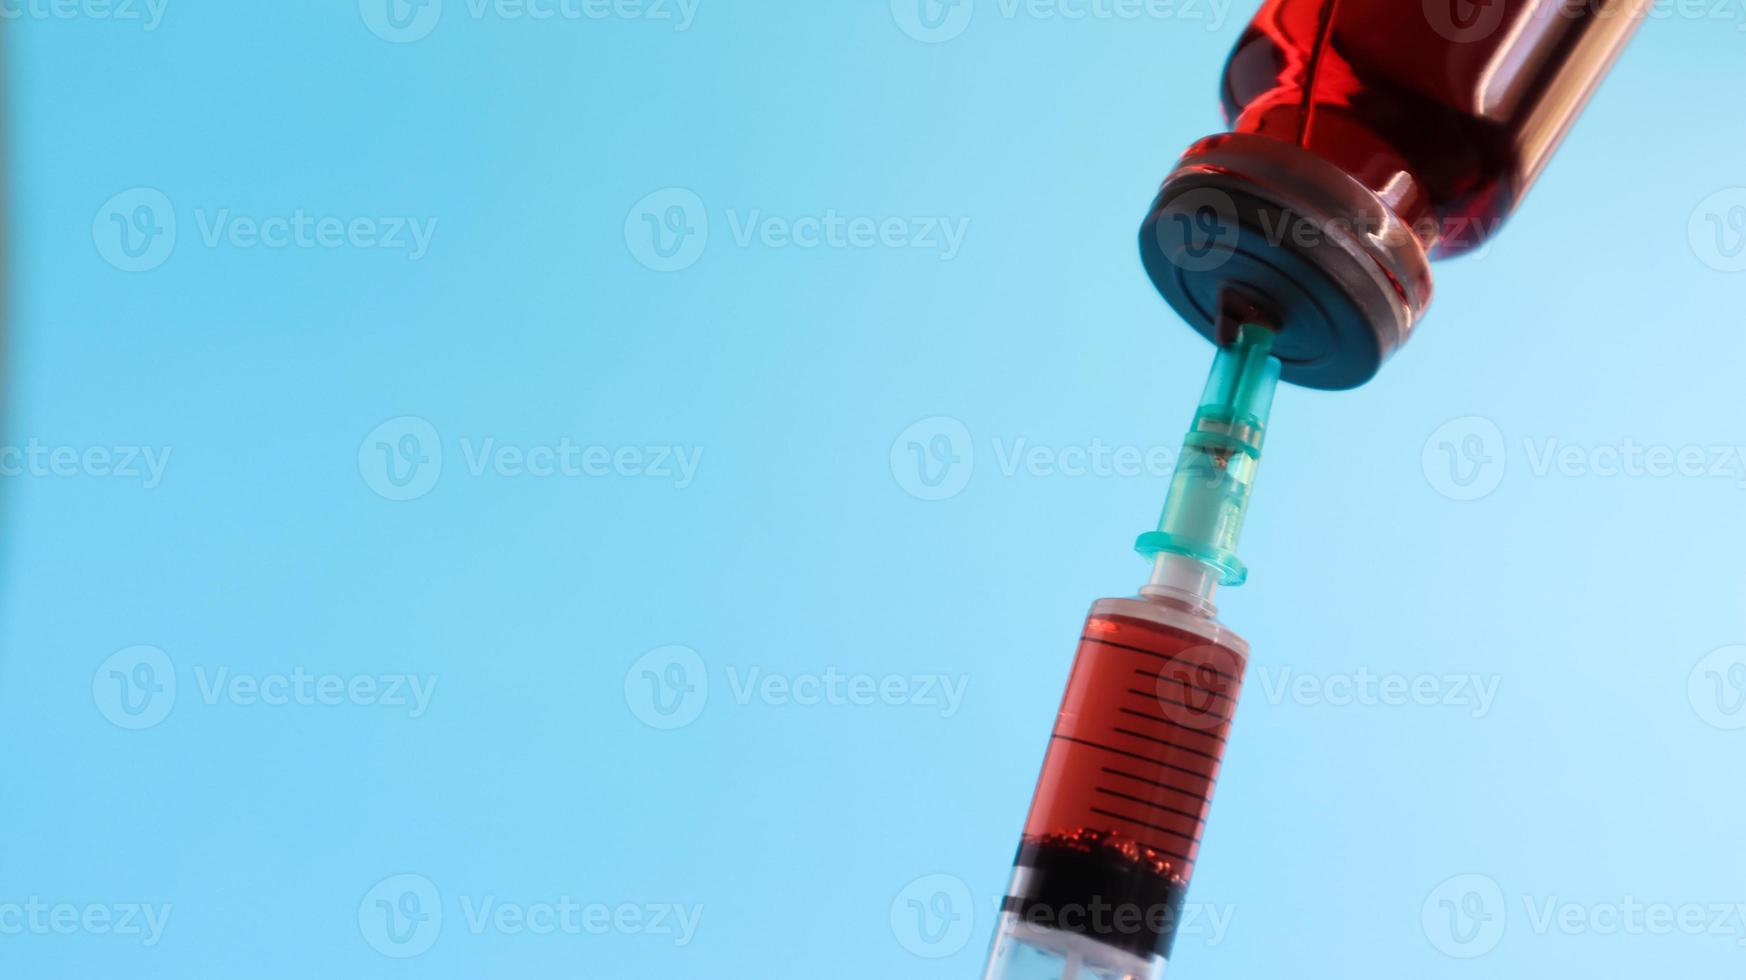 coronavirus griep en pandemische vaccins, spuit en injectieflacon met rode vloeistof op een blauwe achtergrond. medisch concept, onderhuidse injectie, behandeling van de ziekte. kopieer ruimte voor tekst of logo foto